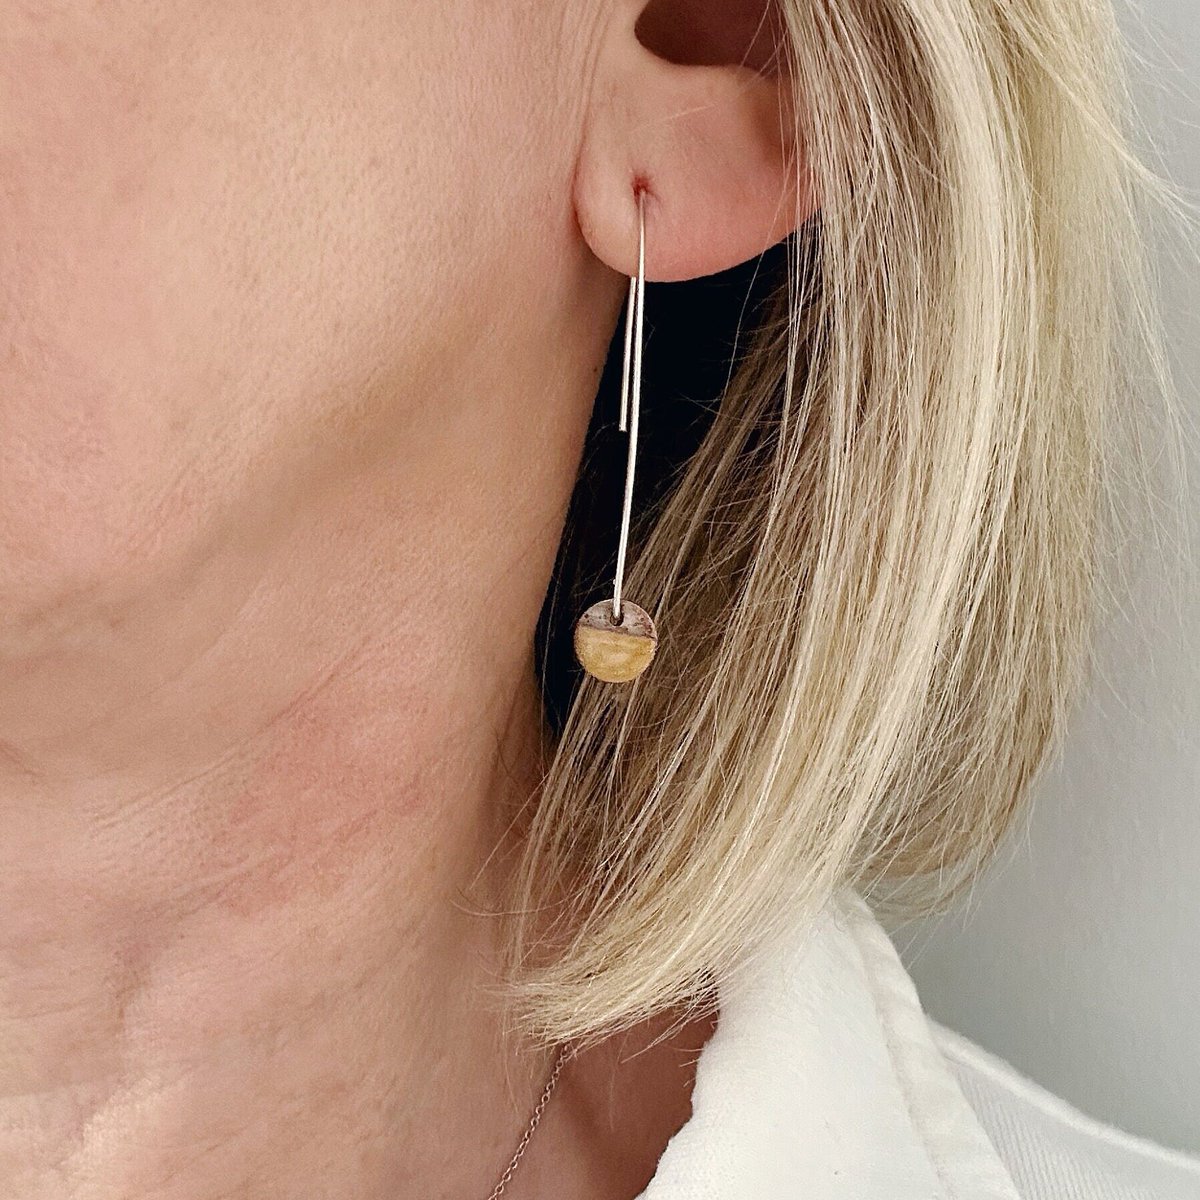 Yellow Copper Enamel Drop Earrings on Handmade Sterling Silver Ear Wires, Geometric Earrings tuppu.net/436622ad #MaisyPlum #MHHSBD #ShopIndie #UKCraftersHour #Etsy #DiscEarrings